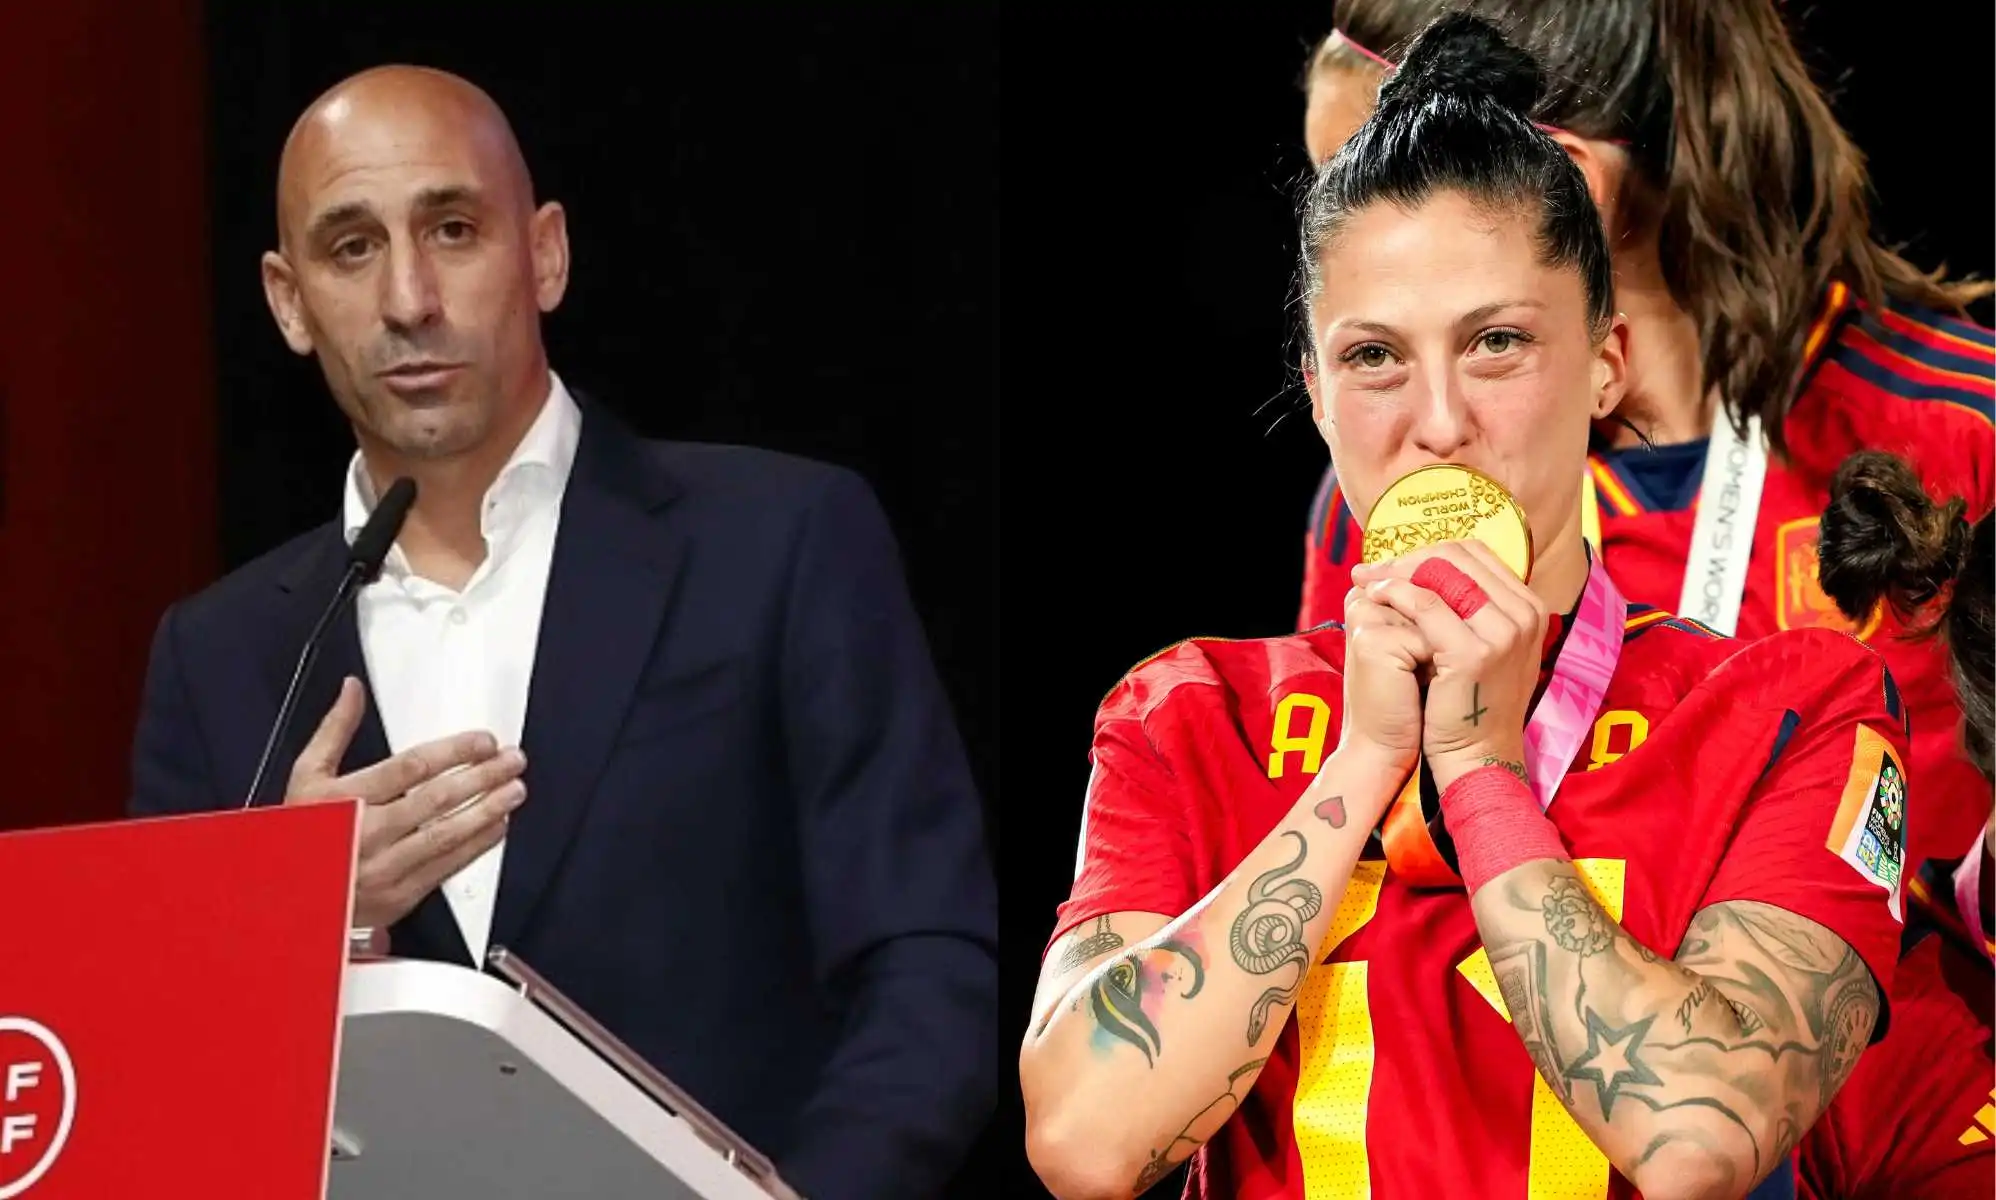 El beso no consentido de Luis Rubiales a Jenni Hermoso en la final del Mundial de fútbol